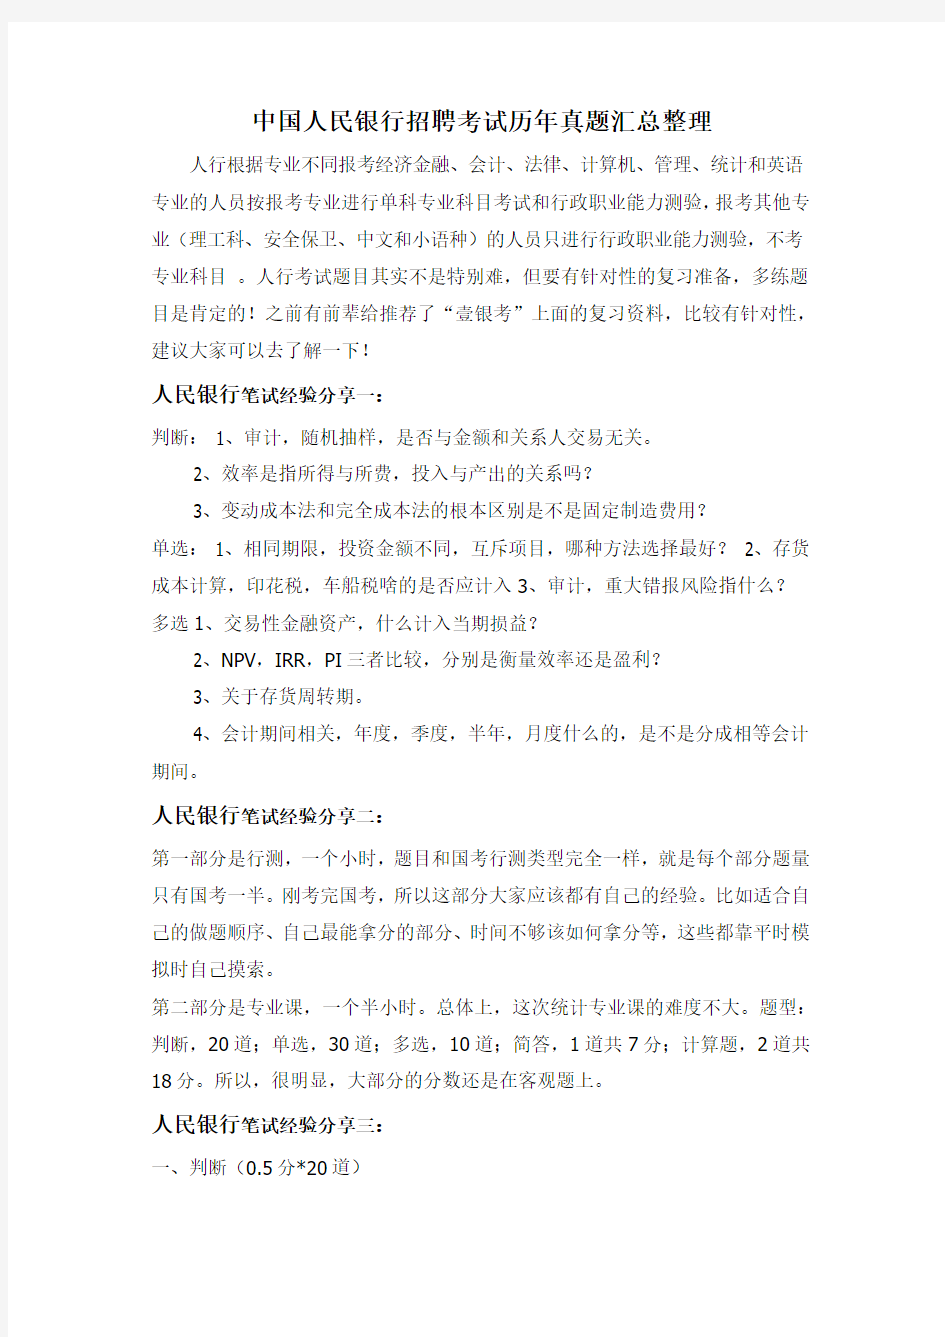 2018年中国人民银行上海市分行社会招聘考试内容试卷历年真题